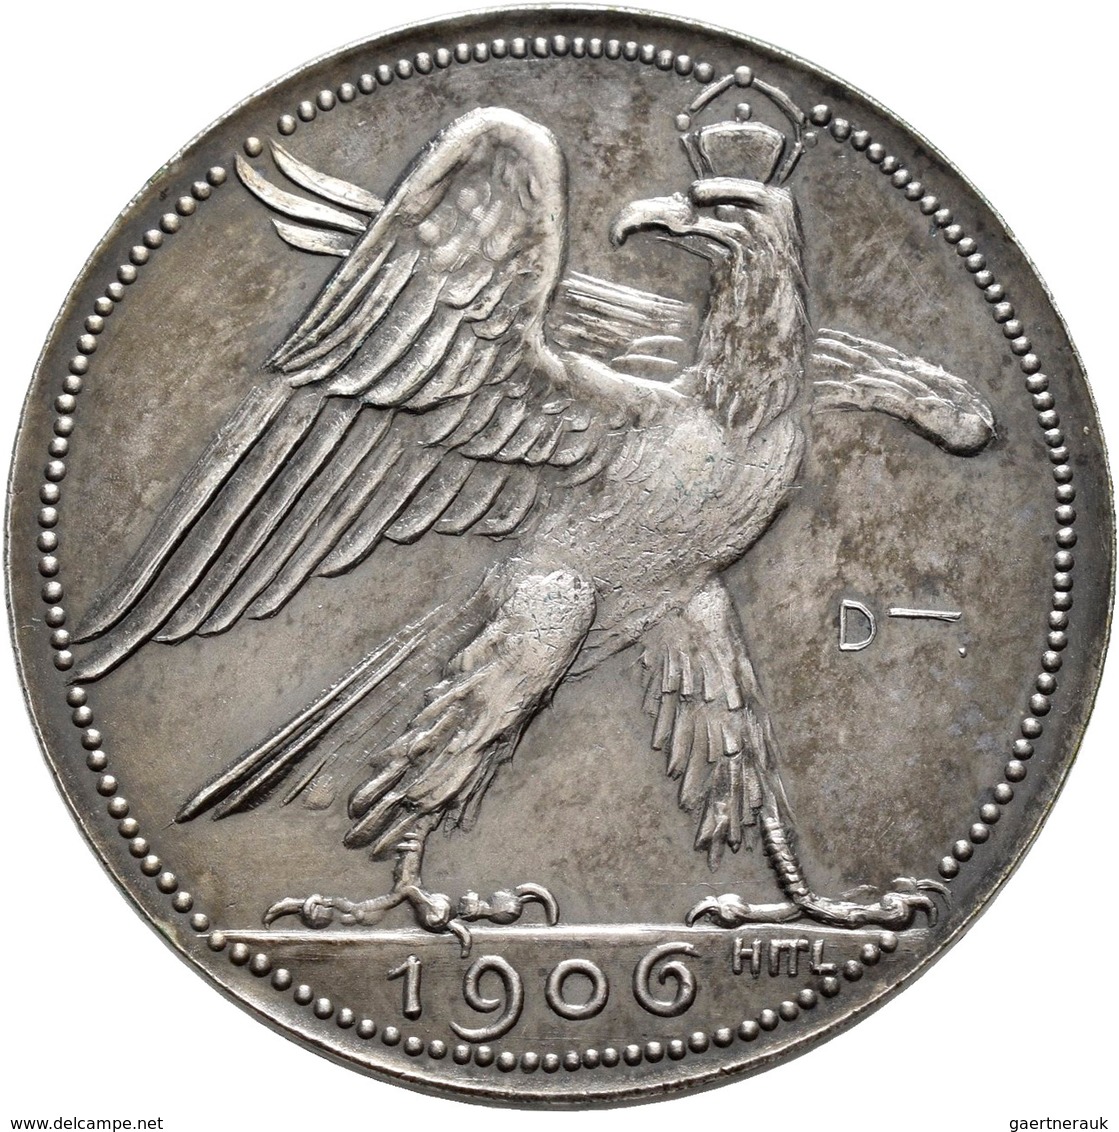 Medaillen Deutschland: 15. Deutsches Bundes-Schießen 1906 in München: Lot 4 Medaillen; Silbermedaill